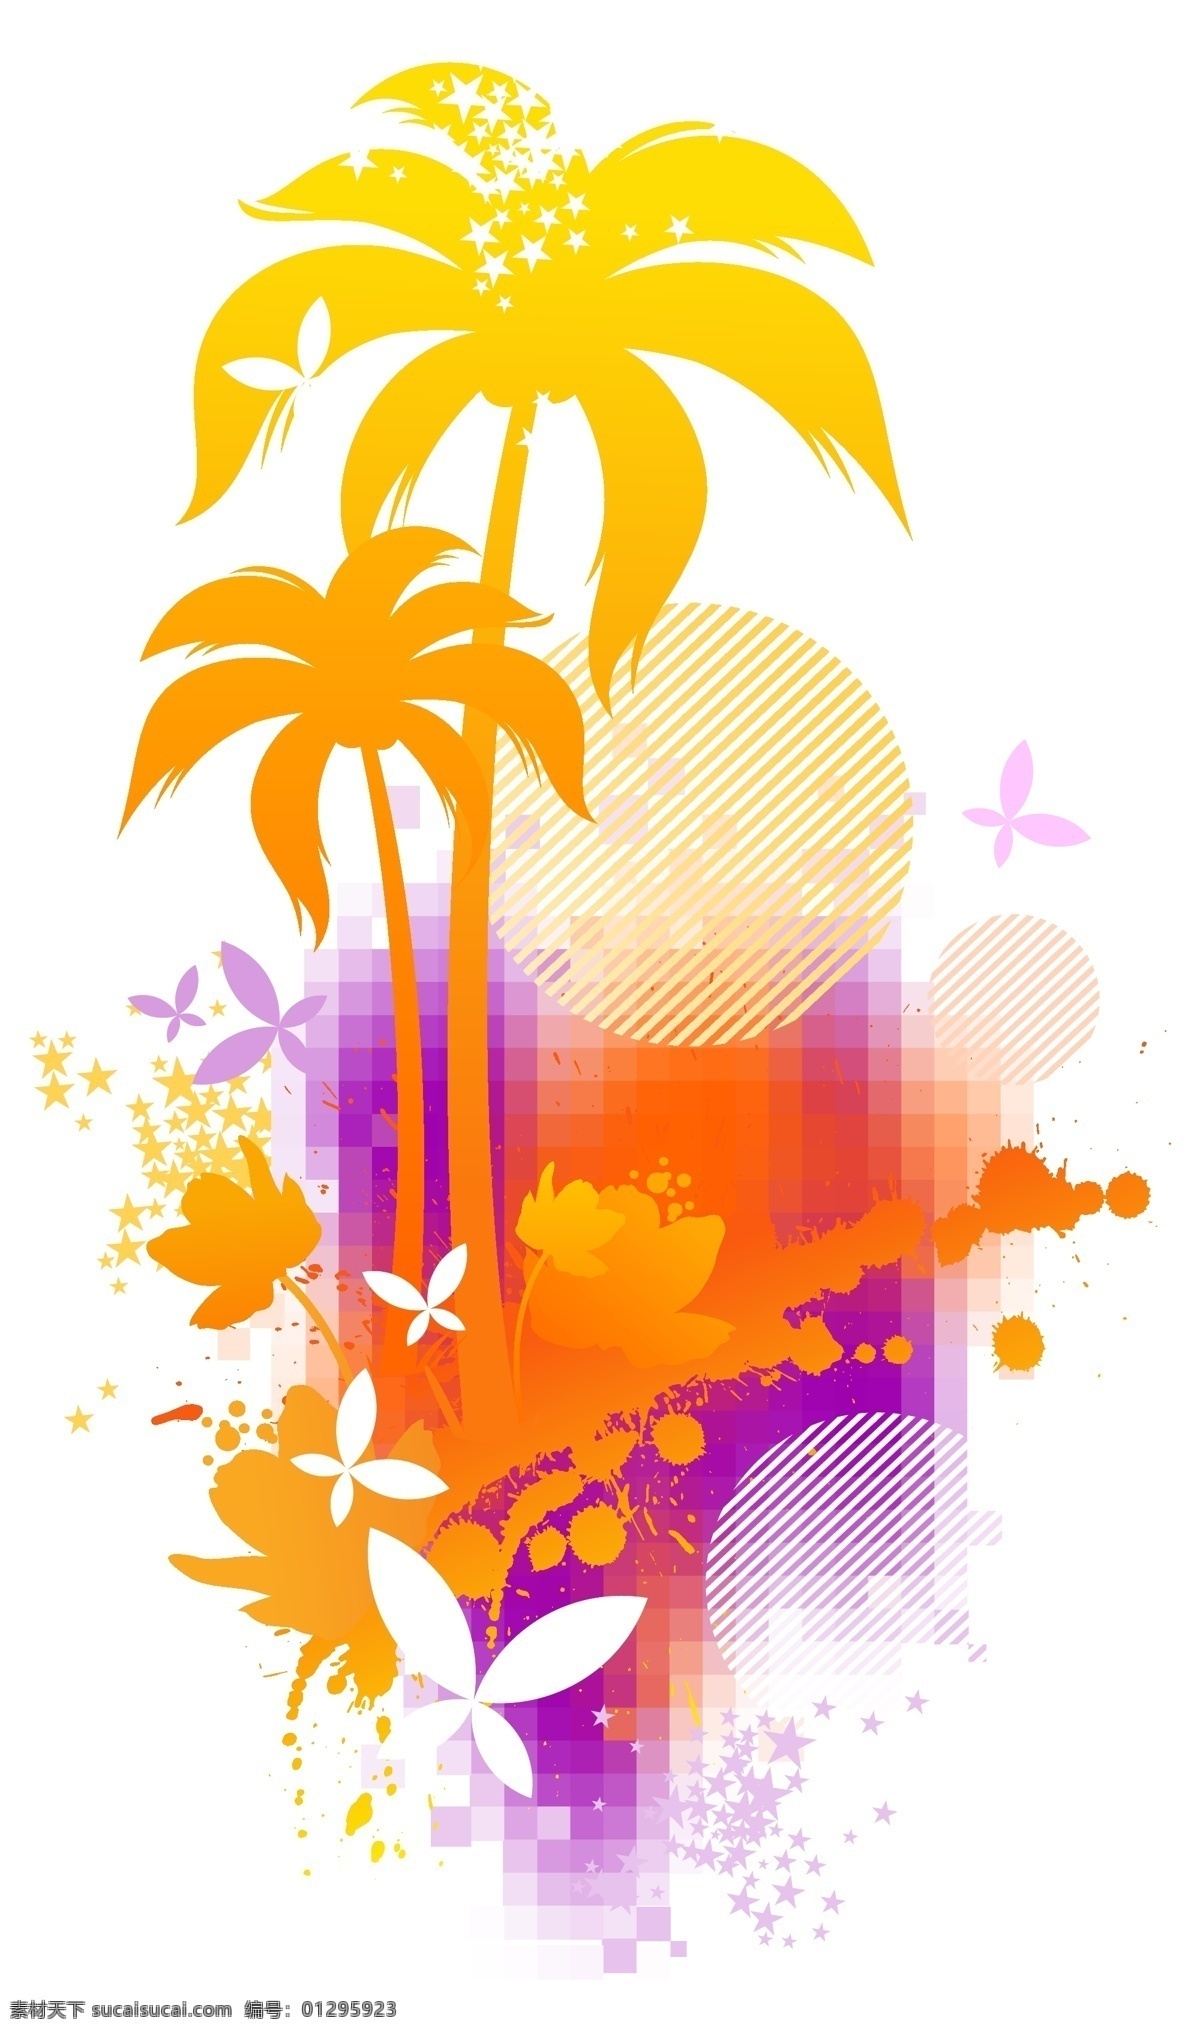 橙色 矢量 椰子树 海滩 阳光 蝴蝶 装饰图案 设计元素 高清 活动